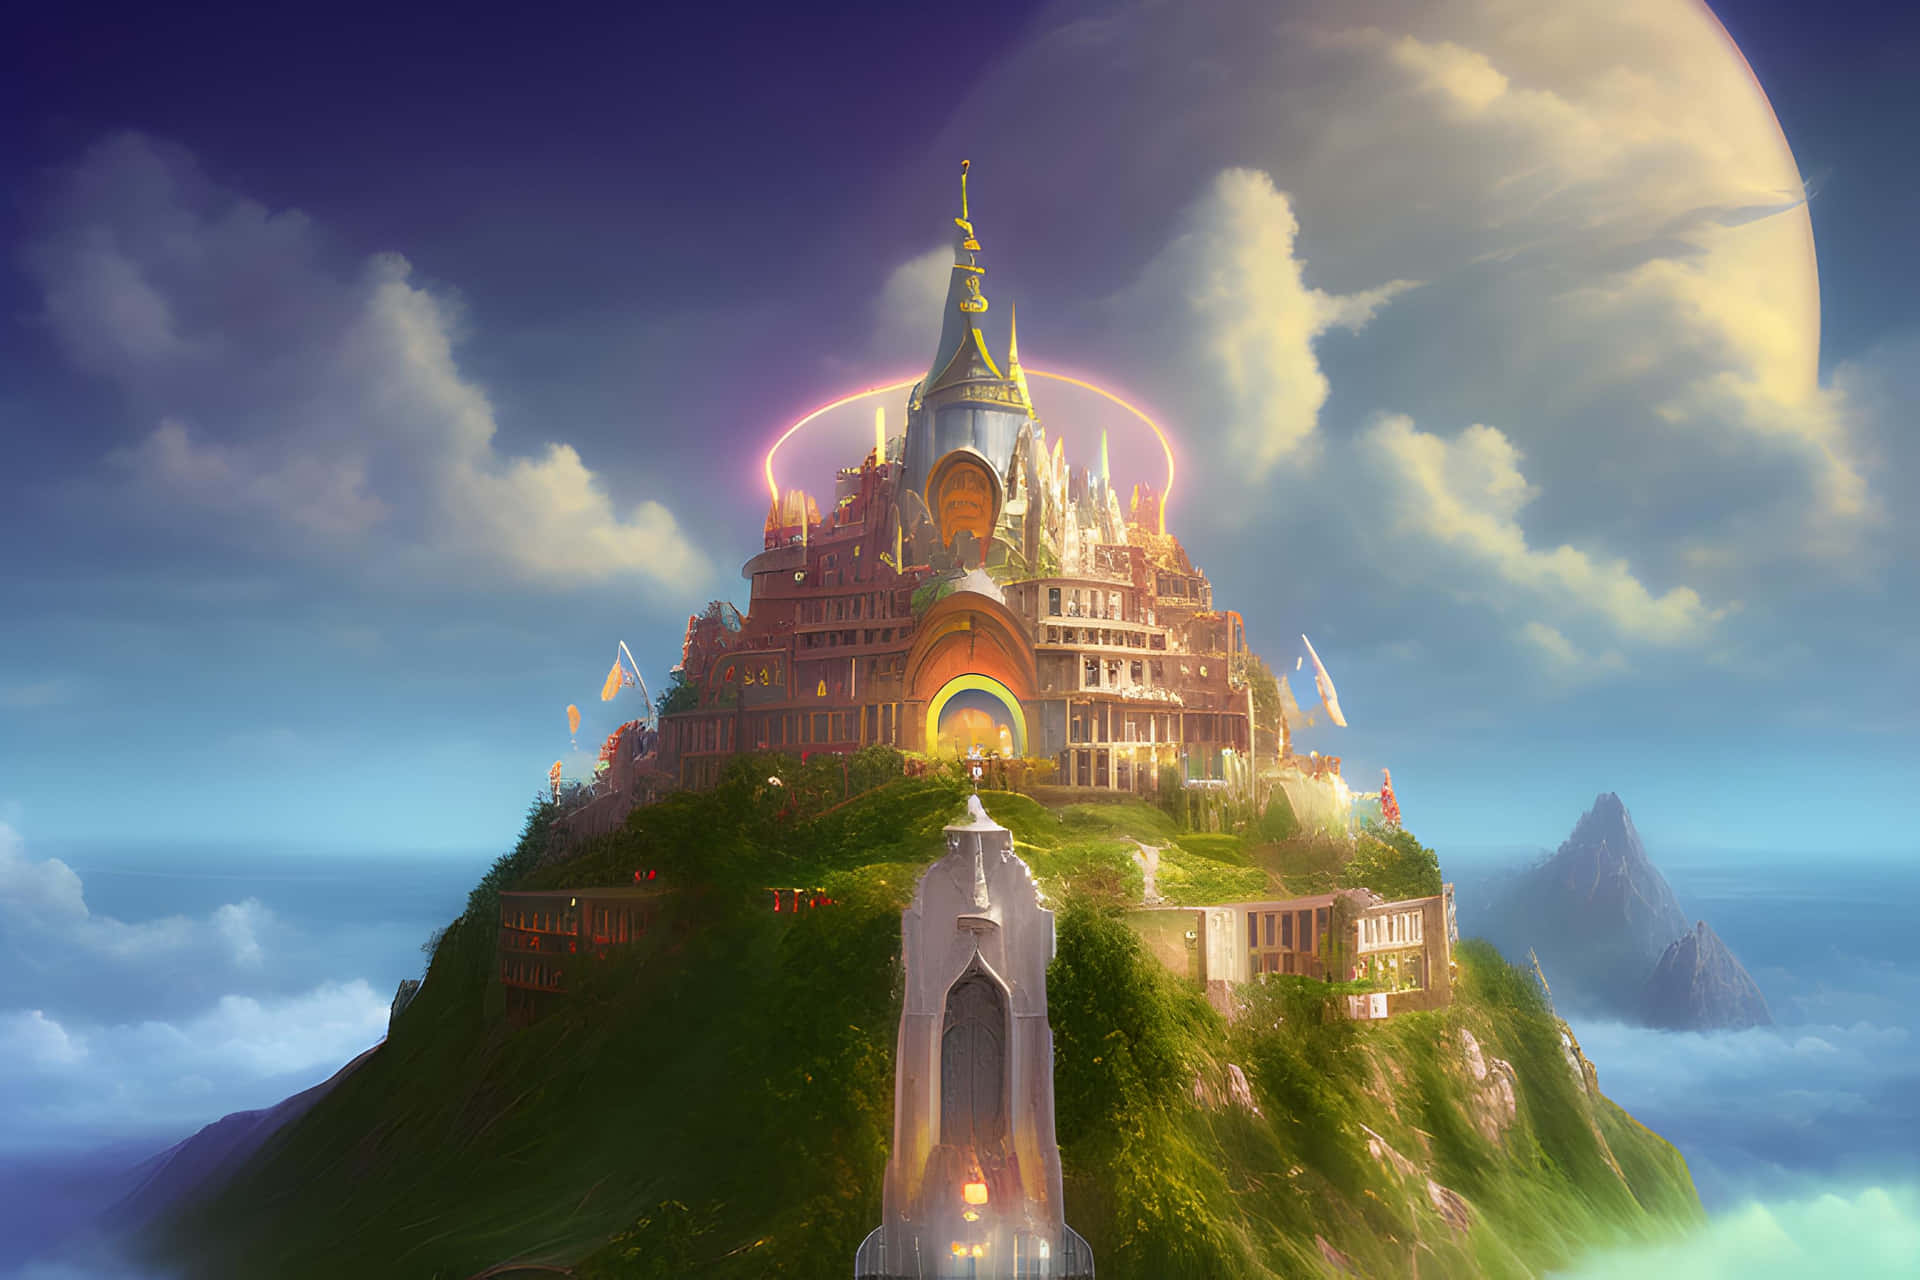 Fantasy Castle Utopiaon Cliff Wallpaper